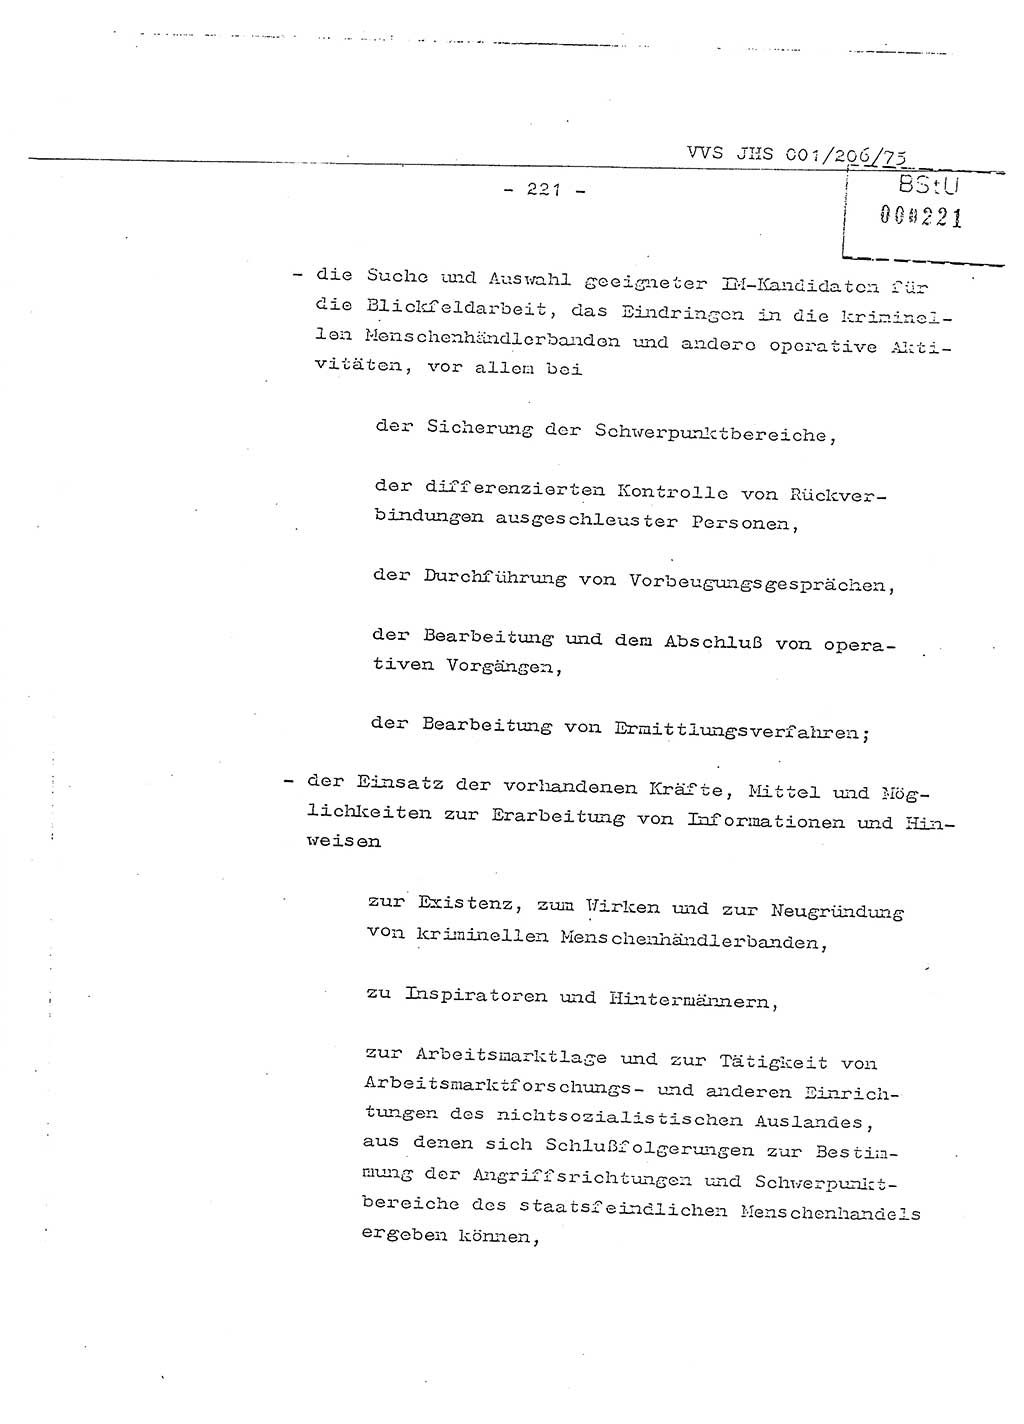 Dissertation Generalmajor Manfred Hummitzsch (Leiter der BV Leipzig), Generalmajor Heinz Fiedler (HA Ⅵ), Oberst Rolf Fister (HA Ⅸ), Ministerium für Staatssicherheit (MfS) [Deutsche Demokratische Republik (DDR)], Juristische Hochschule (JHS), Vertrauliche Verschlußsache (VVS) 001-206/75, Potsdam 1975, Seite 221 (Diss. MfS DDR JHS VVS 001-206/75 1975, S. 221)